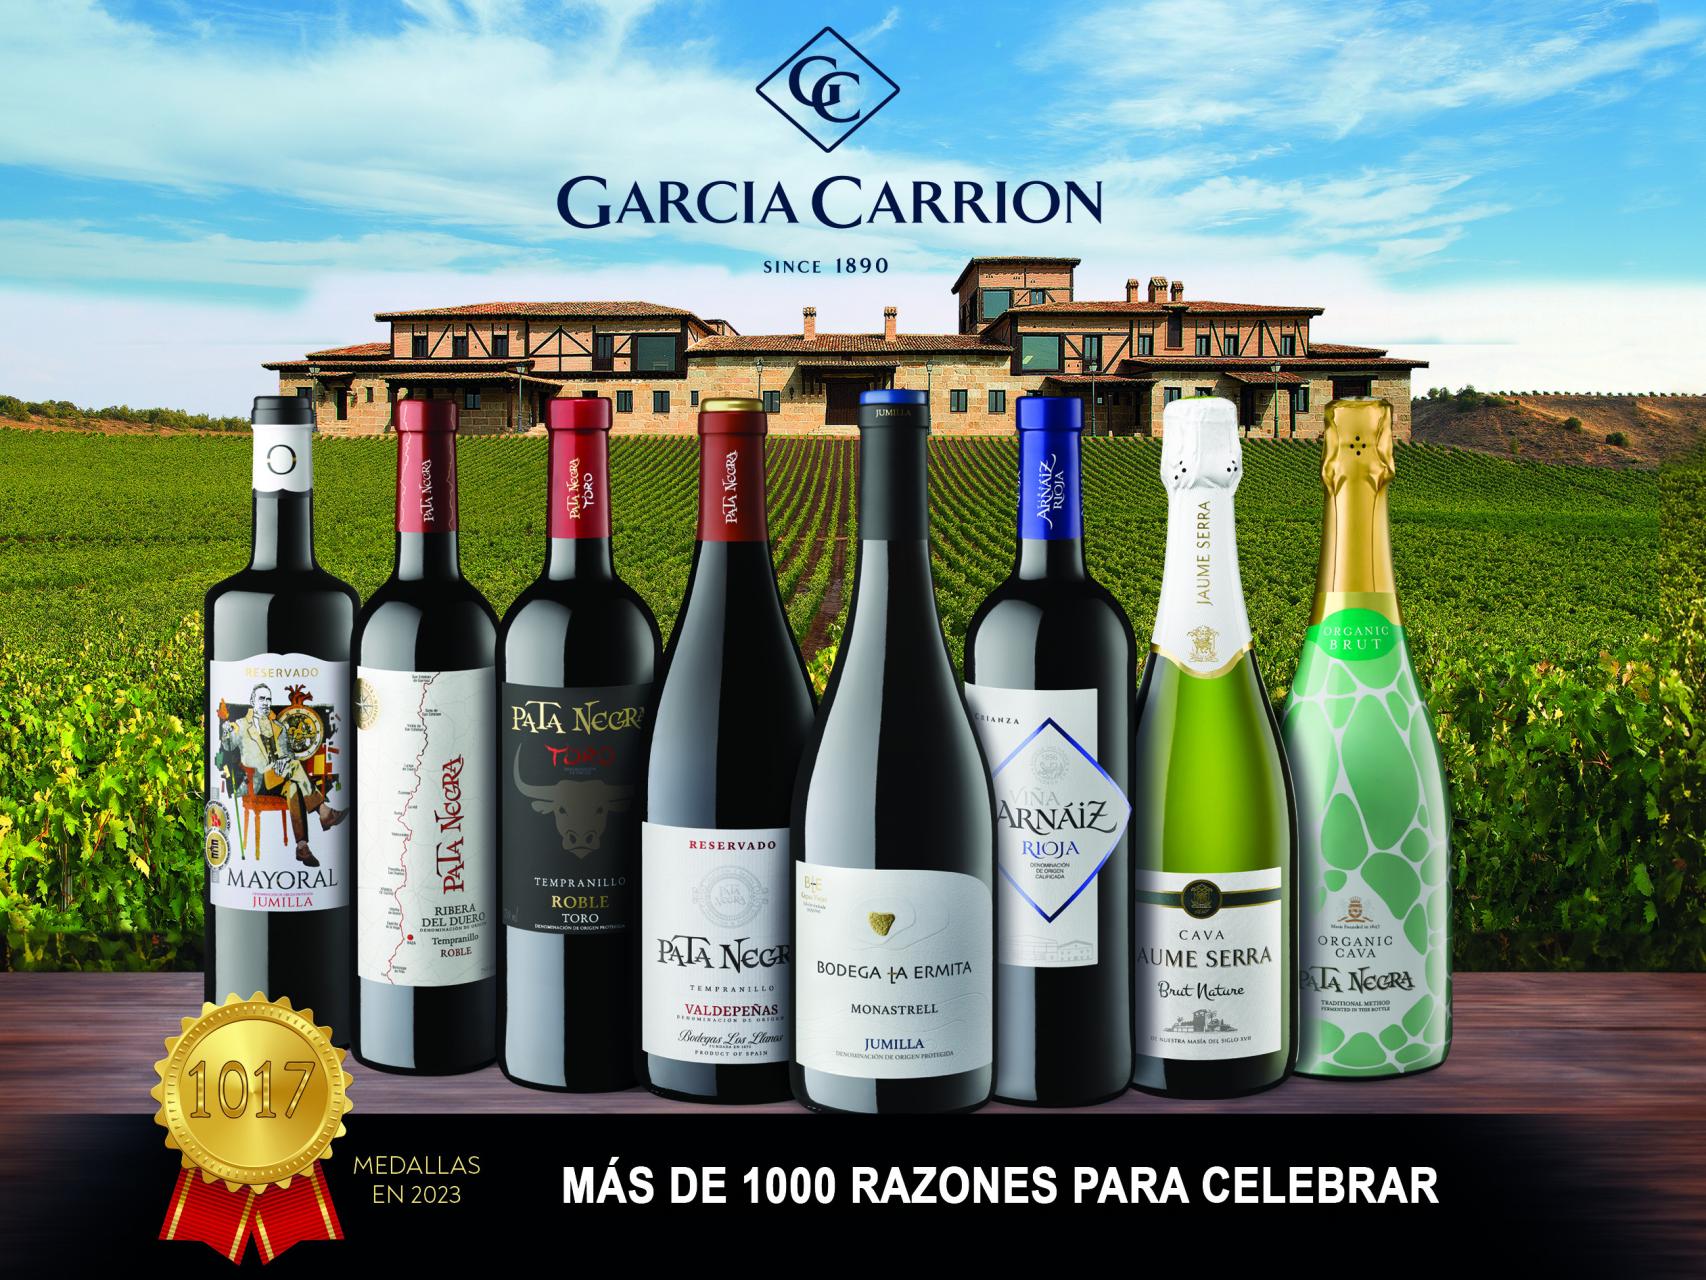 Los vinos y cavas de García Carrión superan las 638 medallas en 2020